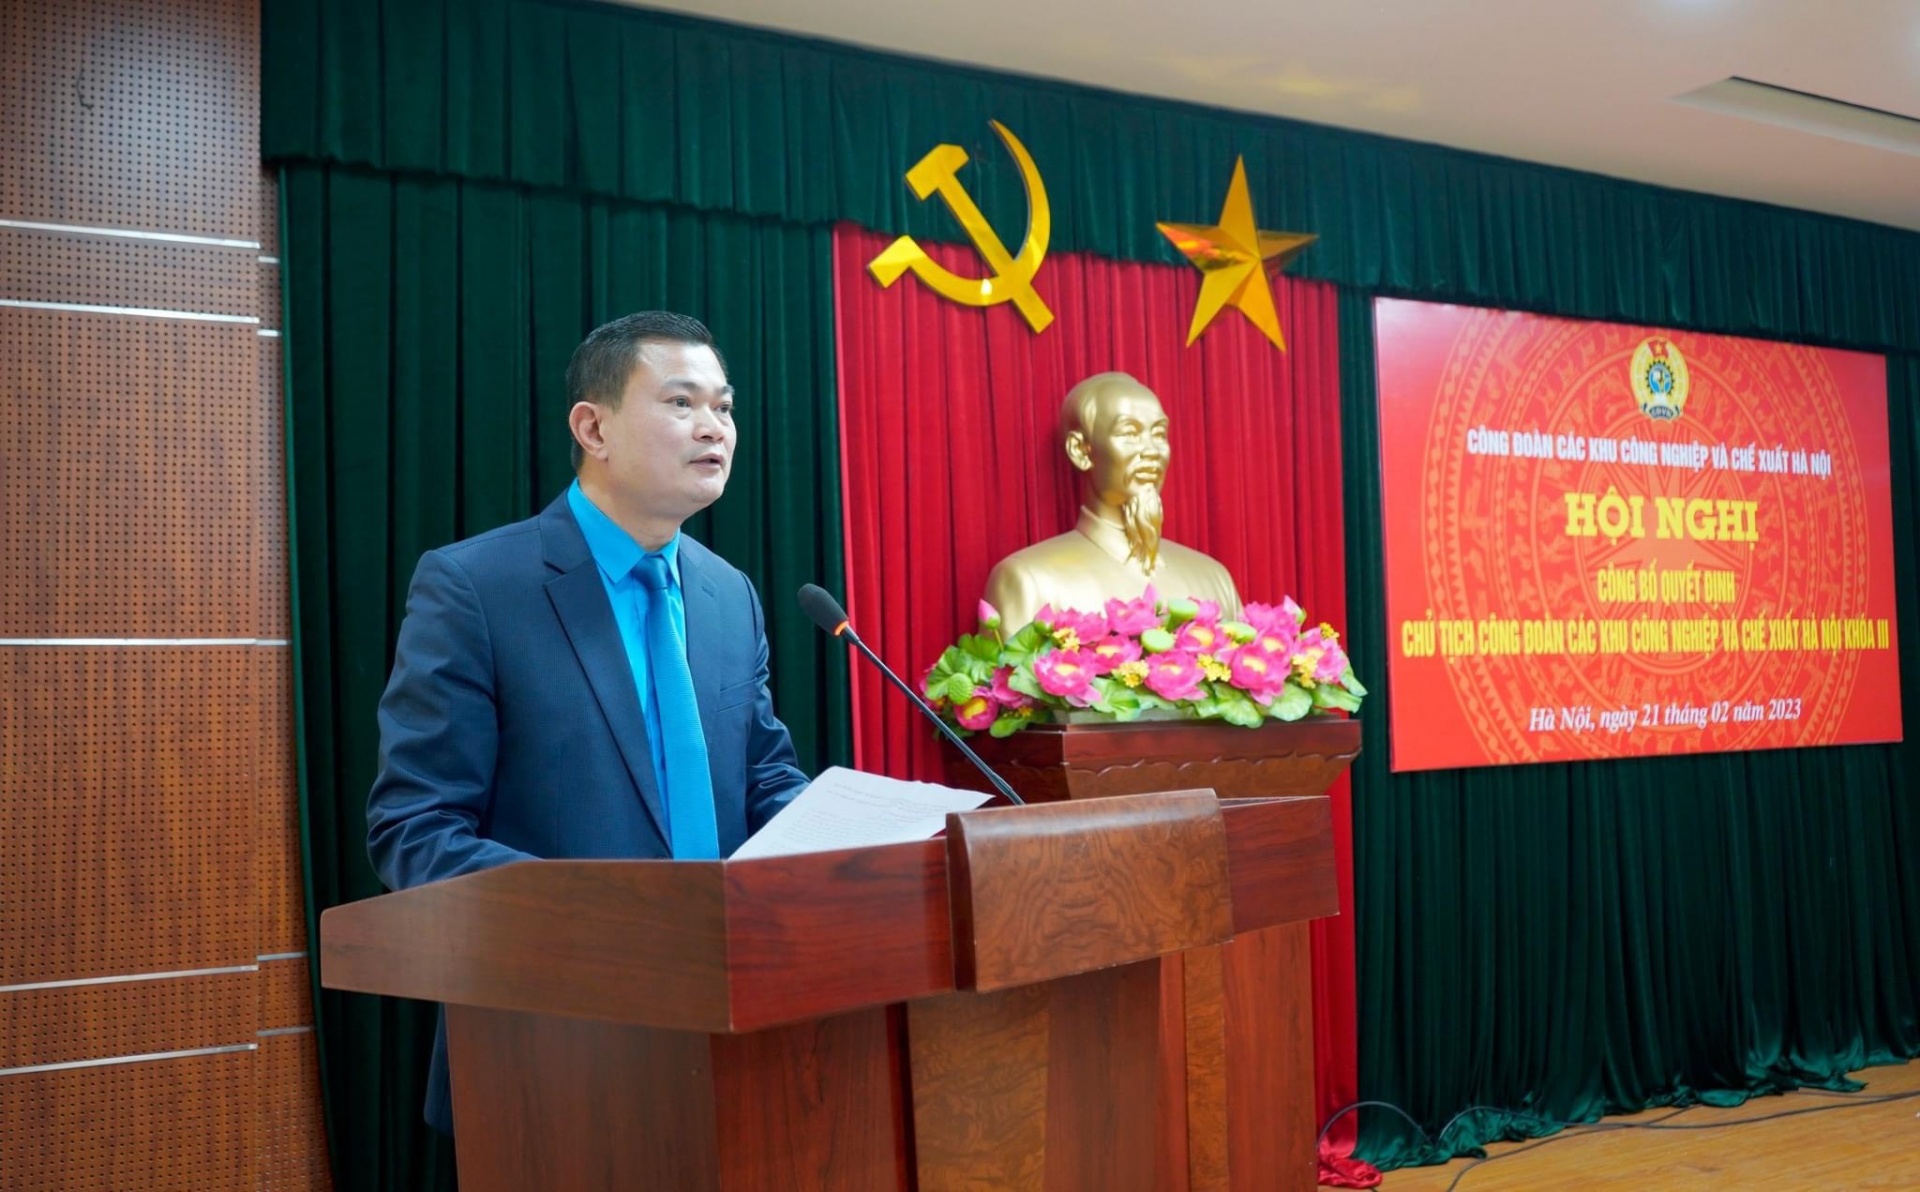 Công bố quyết định Chủ tịch Công đoàn các Khu công nghiệp và chế xuất Hà Nội